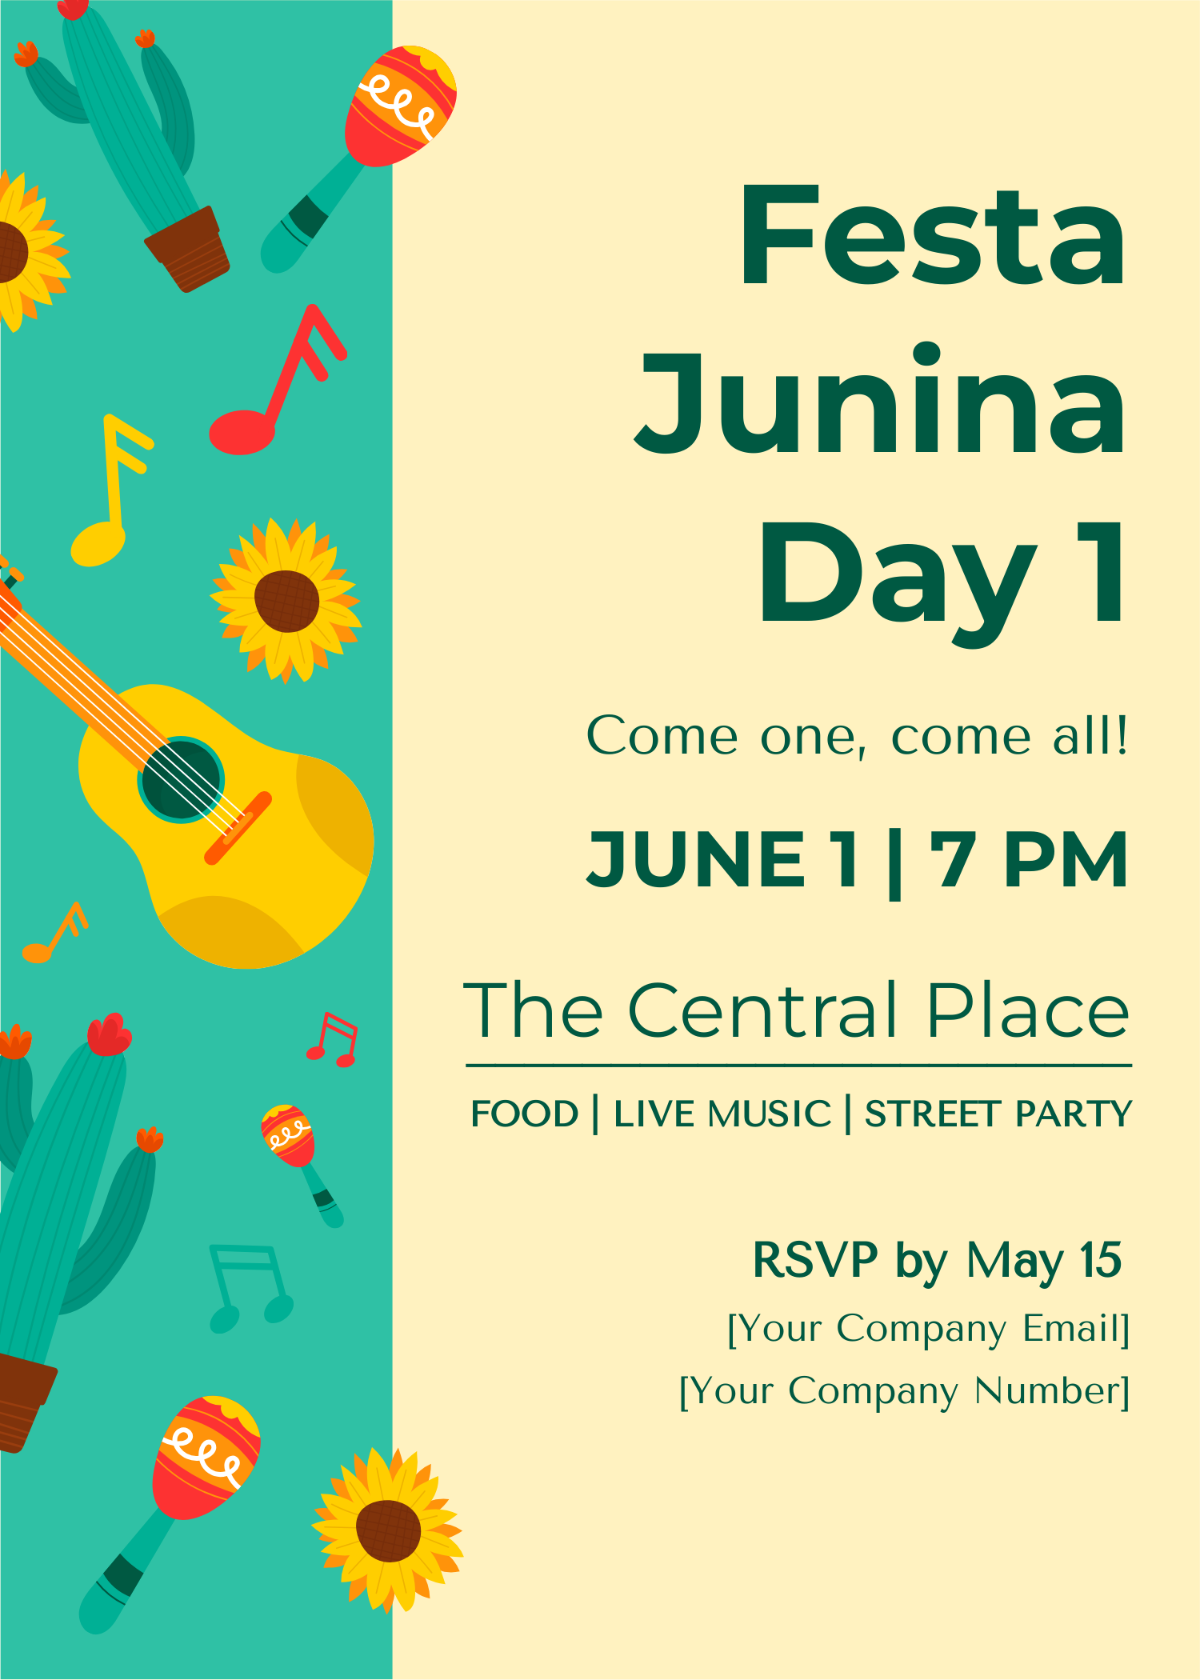 Festa Junina Poster Invitation